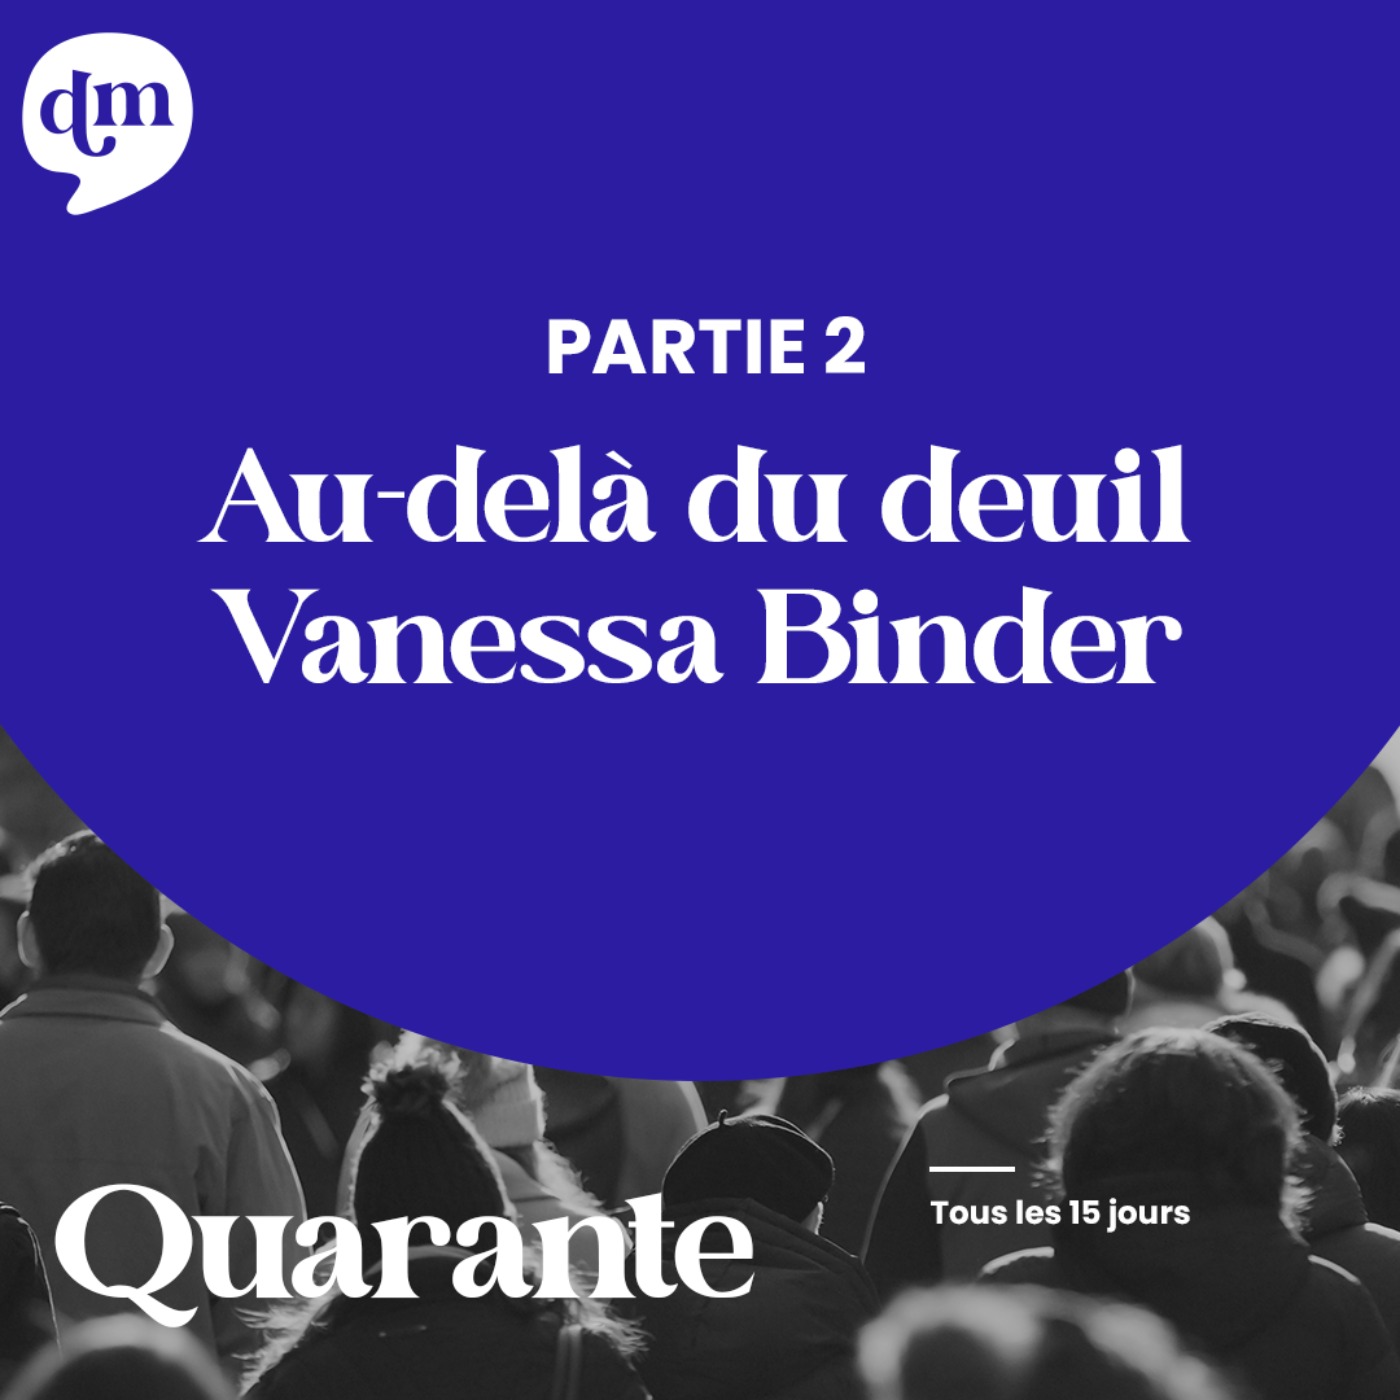 Au-delà du deuil - Vanessa Binder - 2ème partie